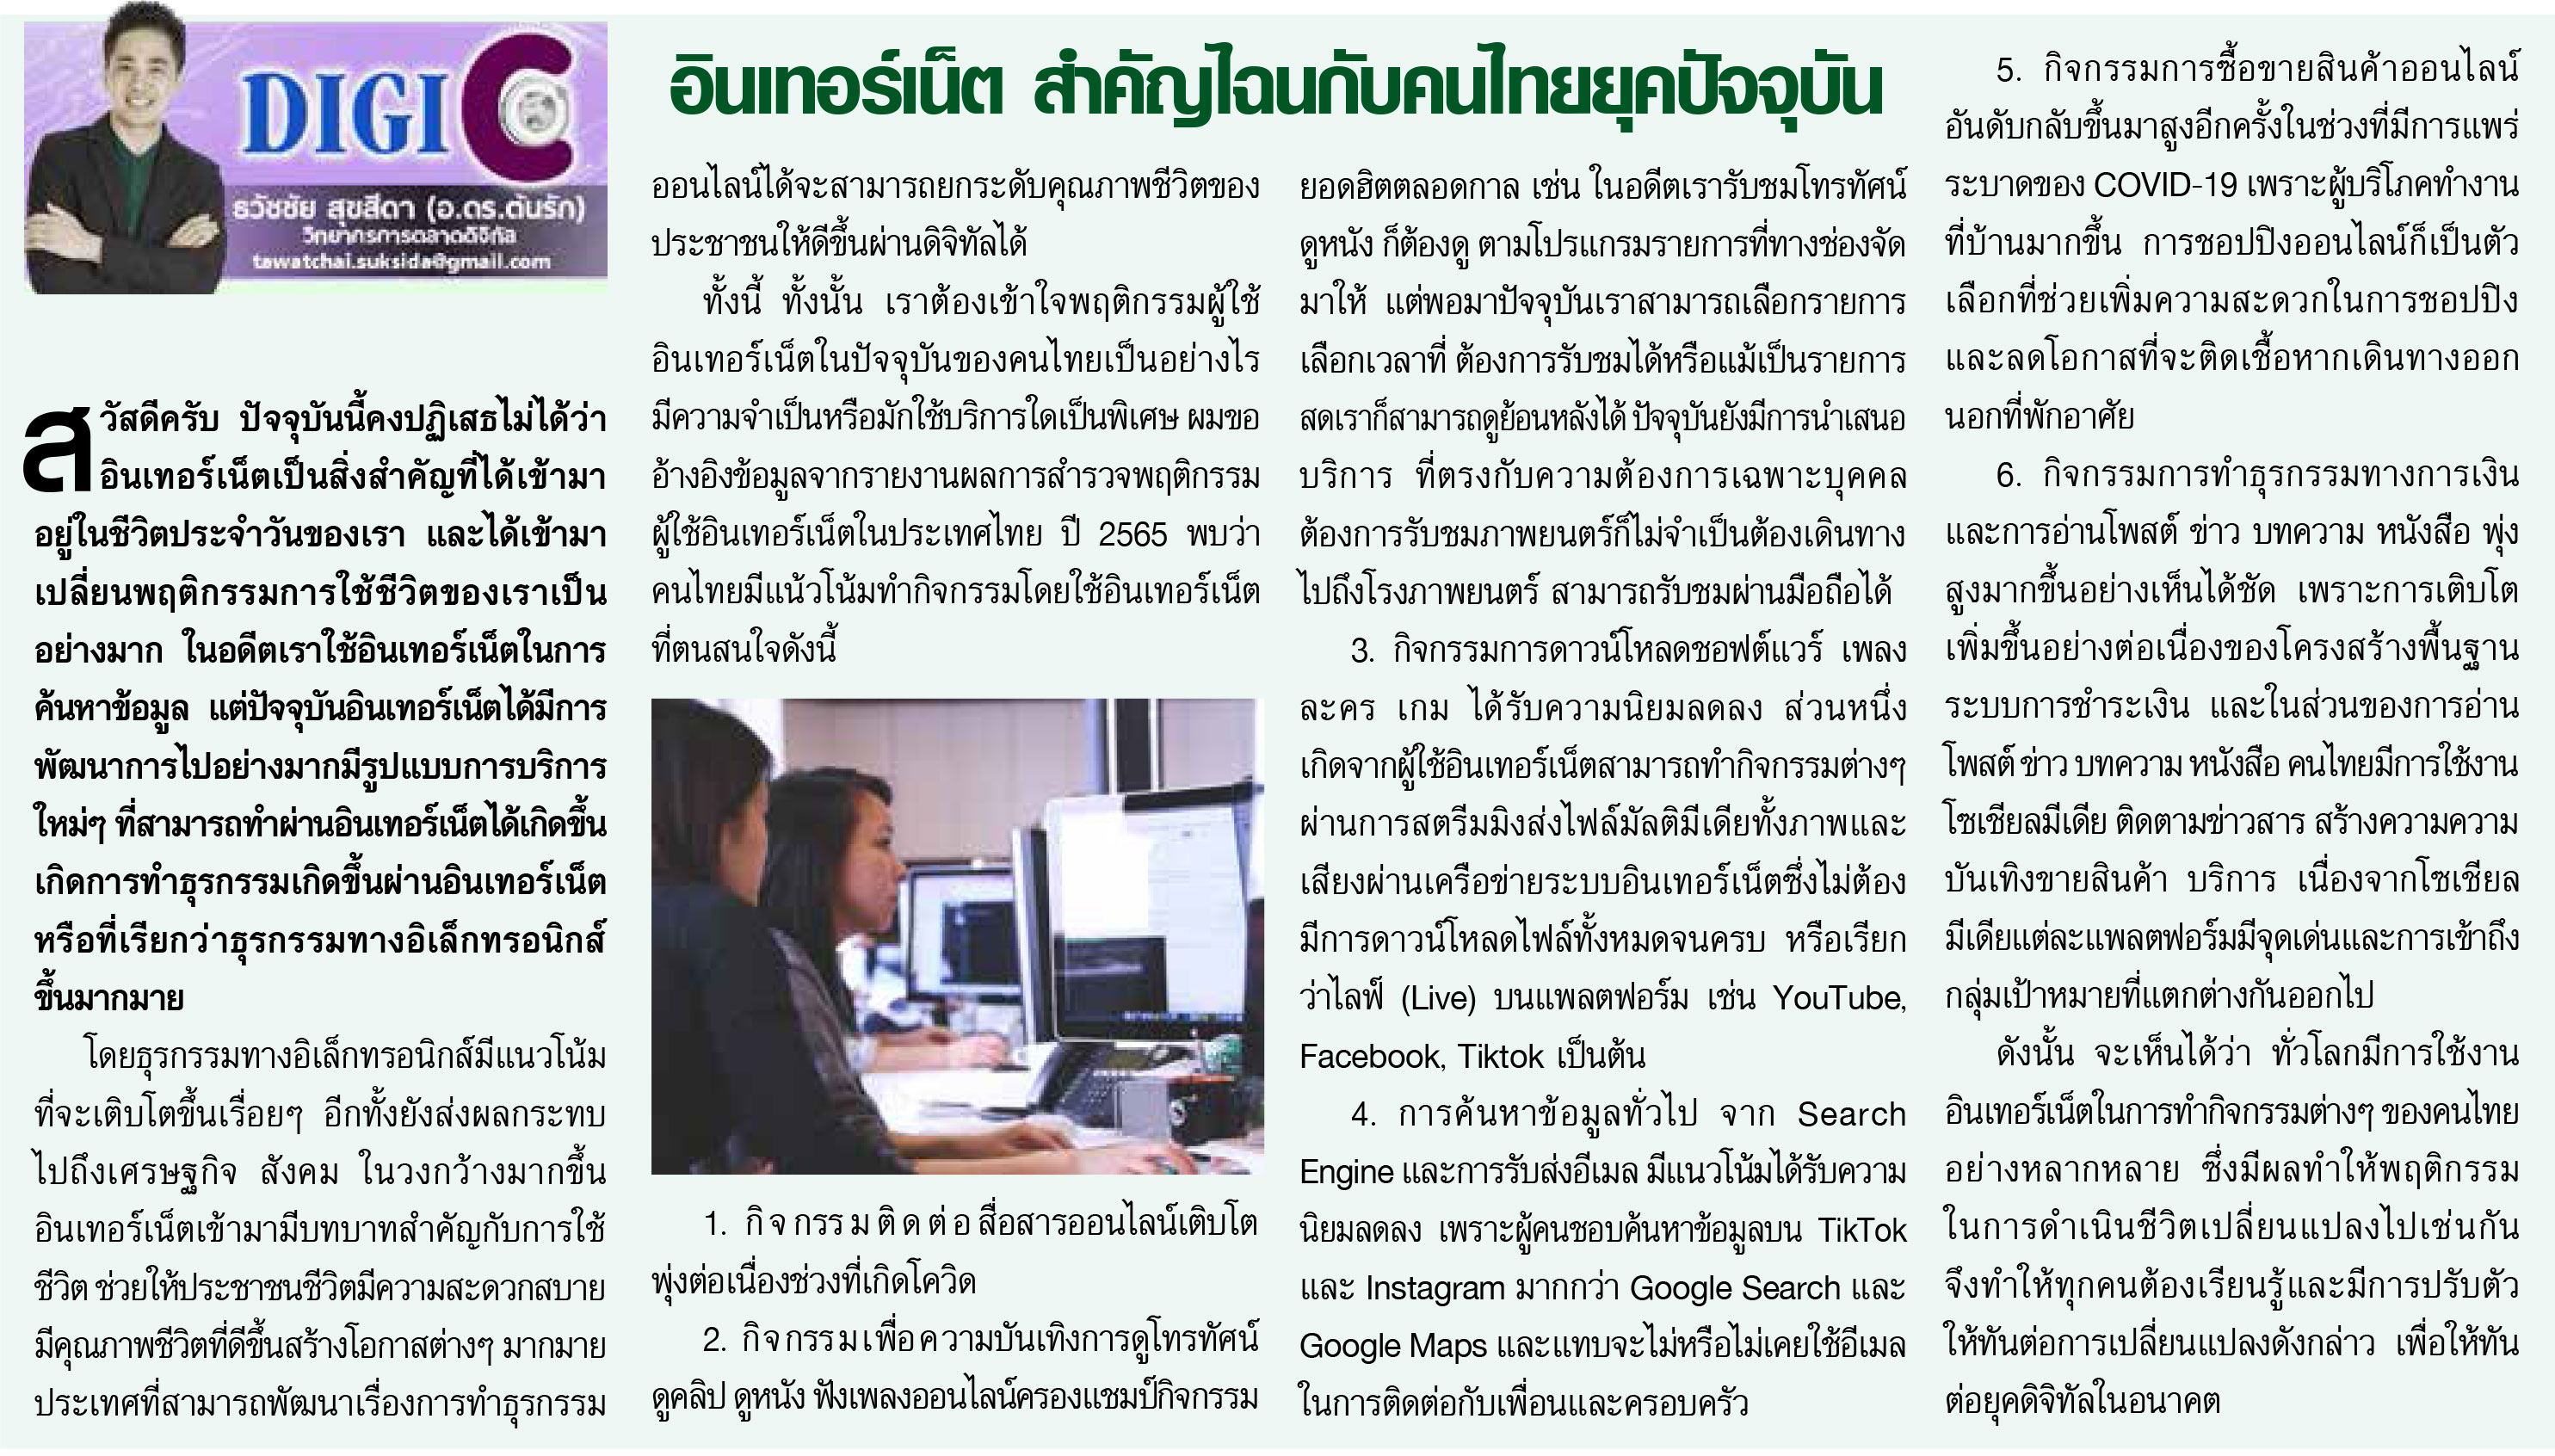 อินเทอร์เน็ต สำคัญไฉนกับคนไทยยุคปัจจุบัน  บทความหนังสือพิมพ์ อปท.นิวส์  อ.ดร.ต้นรัก  เพื่อการปกครองส่วนท้องถิ่น เพื่อพัฒนาประเทศ สู่ความเข้มแข็งและมั่นคง.